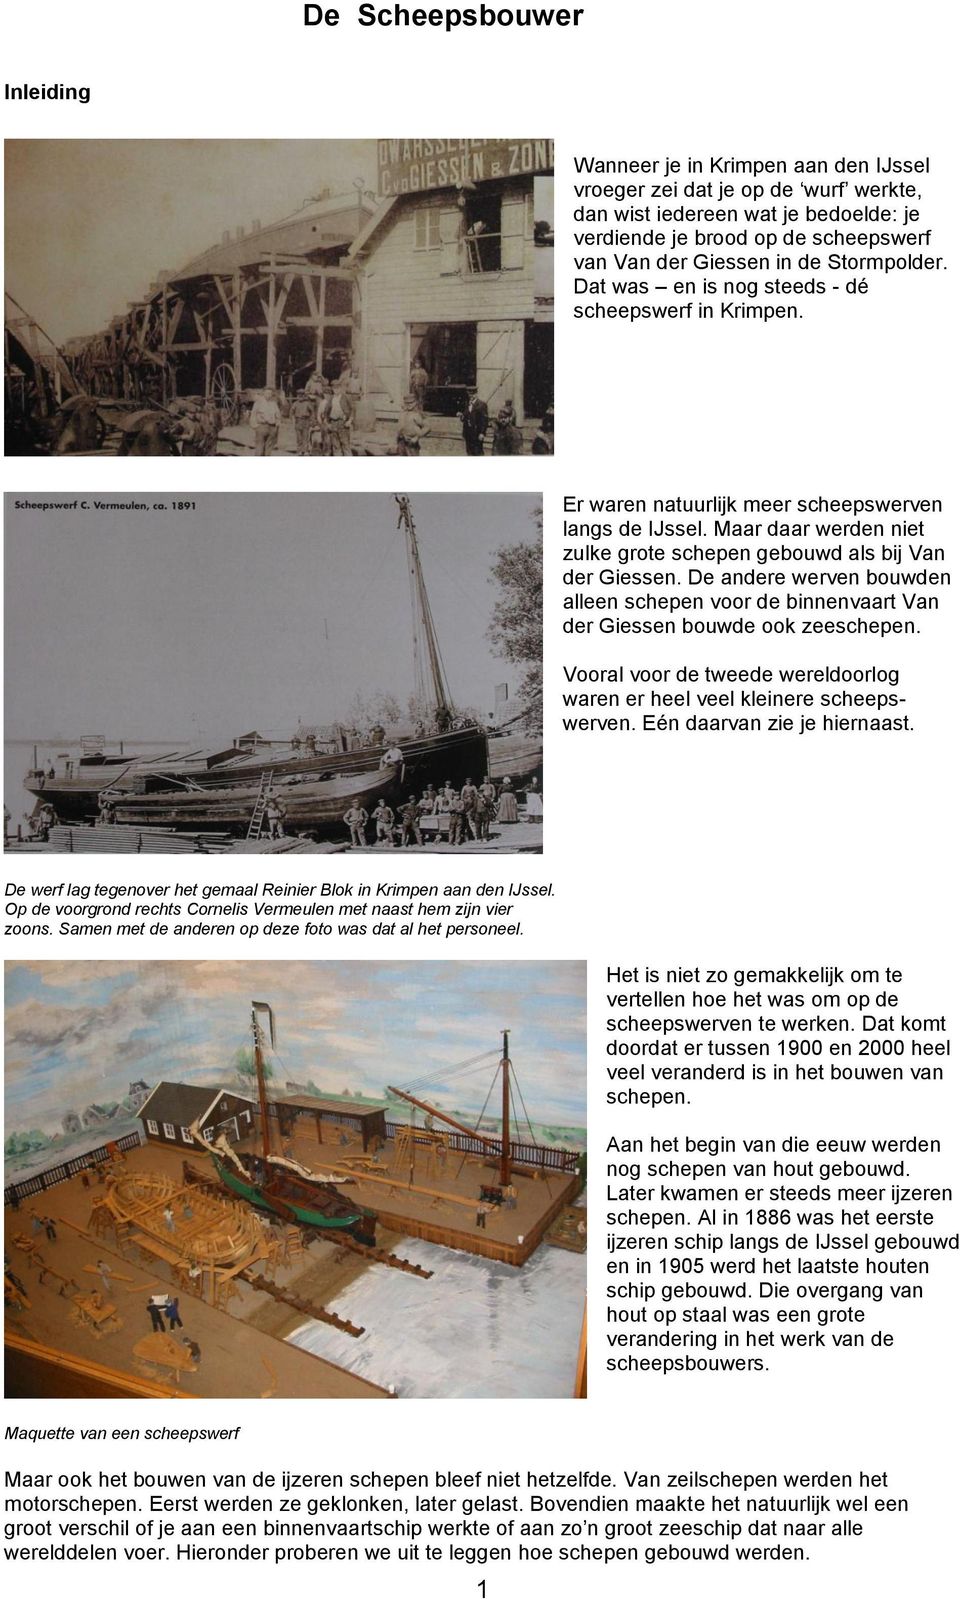 De andere werven bouwden alleen schepen voor de binnenvaart Van der Giessen bouwde ook zeeschepen. Vooral voor de tweede wereldoorlog waren er heel veel kleinere scheepswerven.